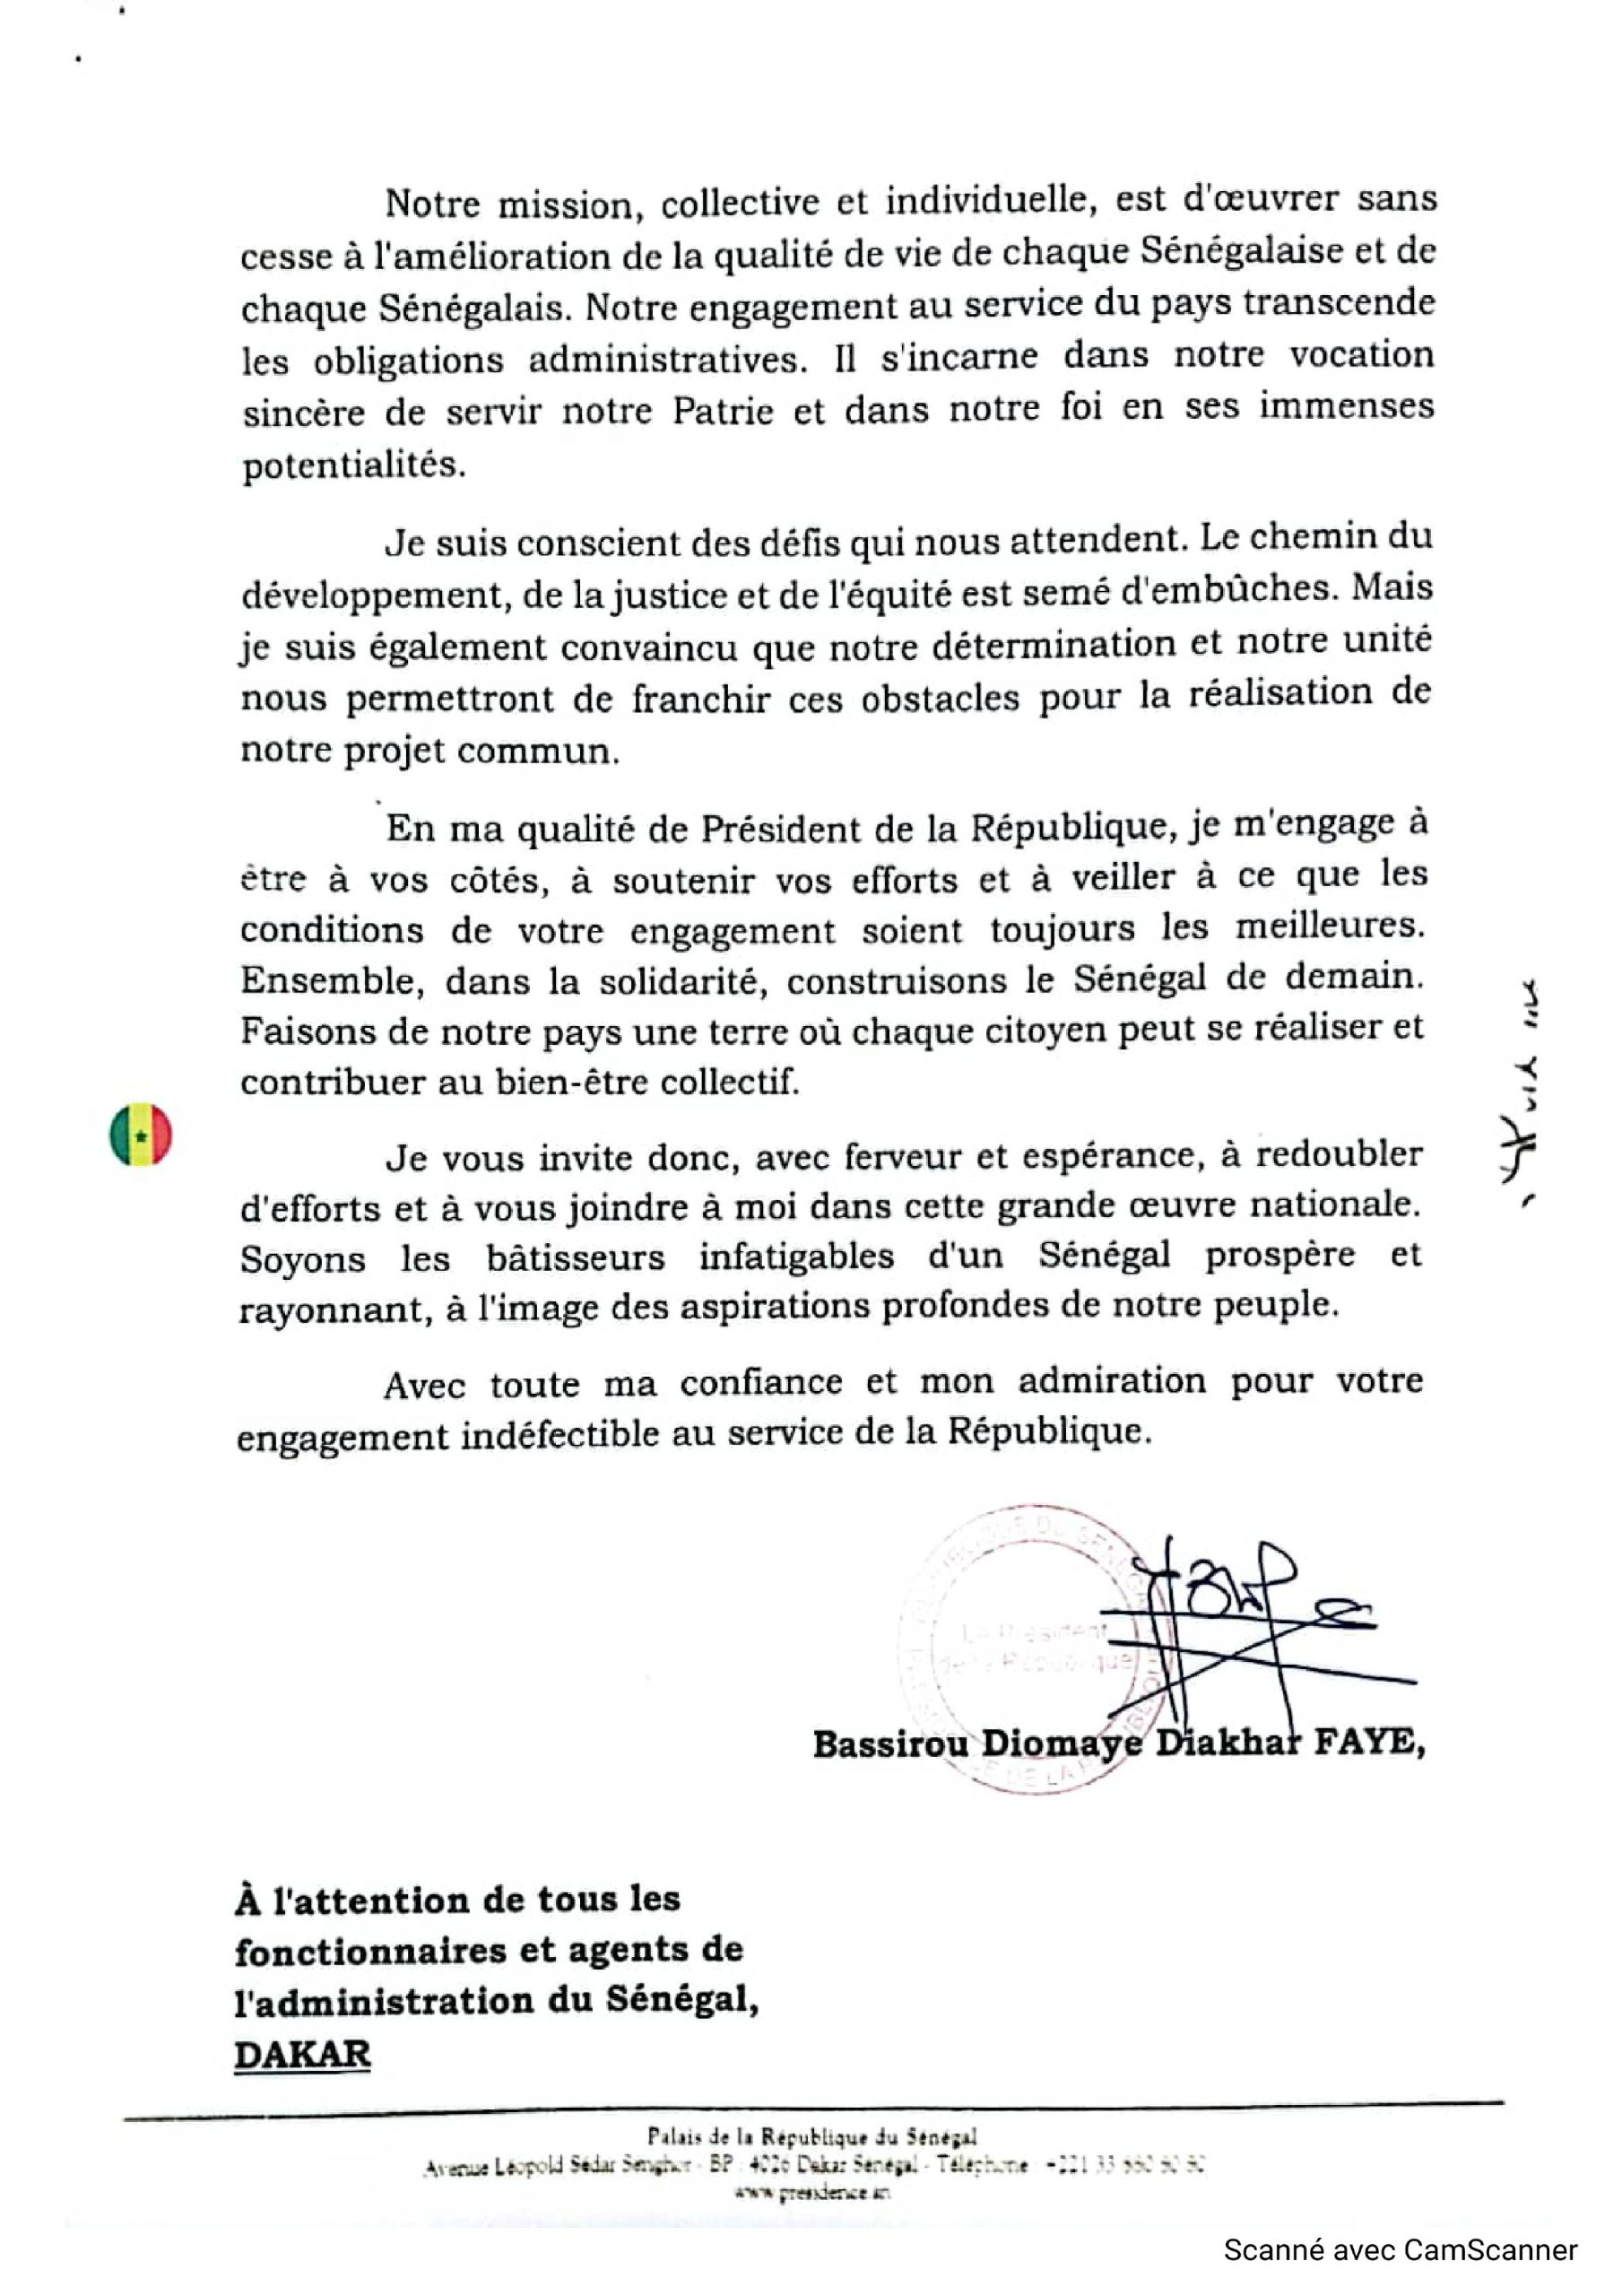 Lettre du Président Bassirou Diomaye Faye aux fonctionnaires et agents de l'administration sénégalaise (2)